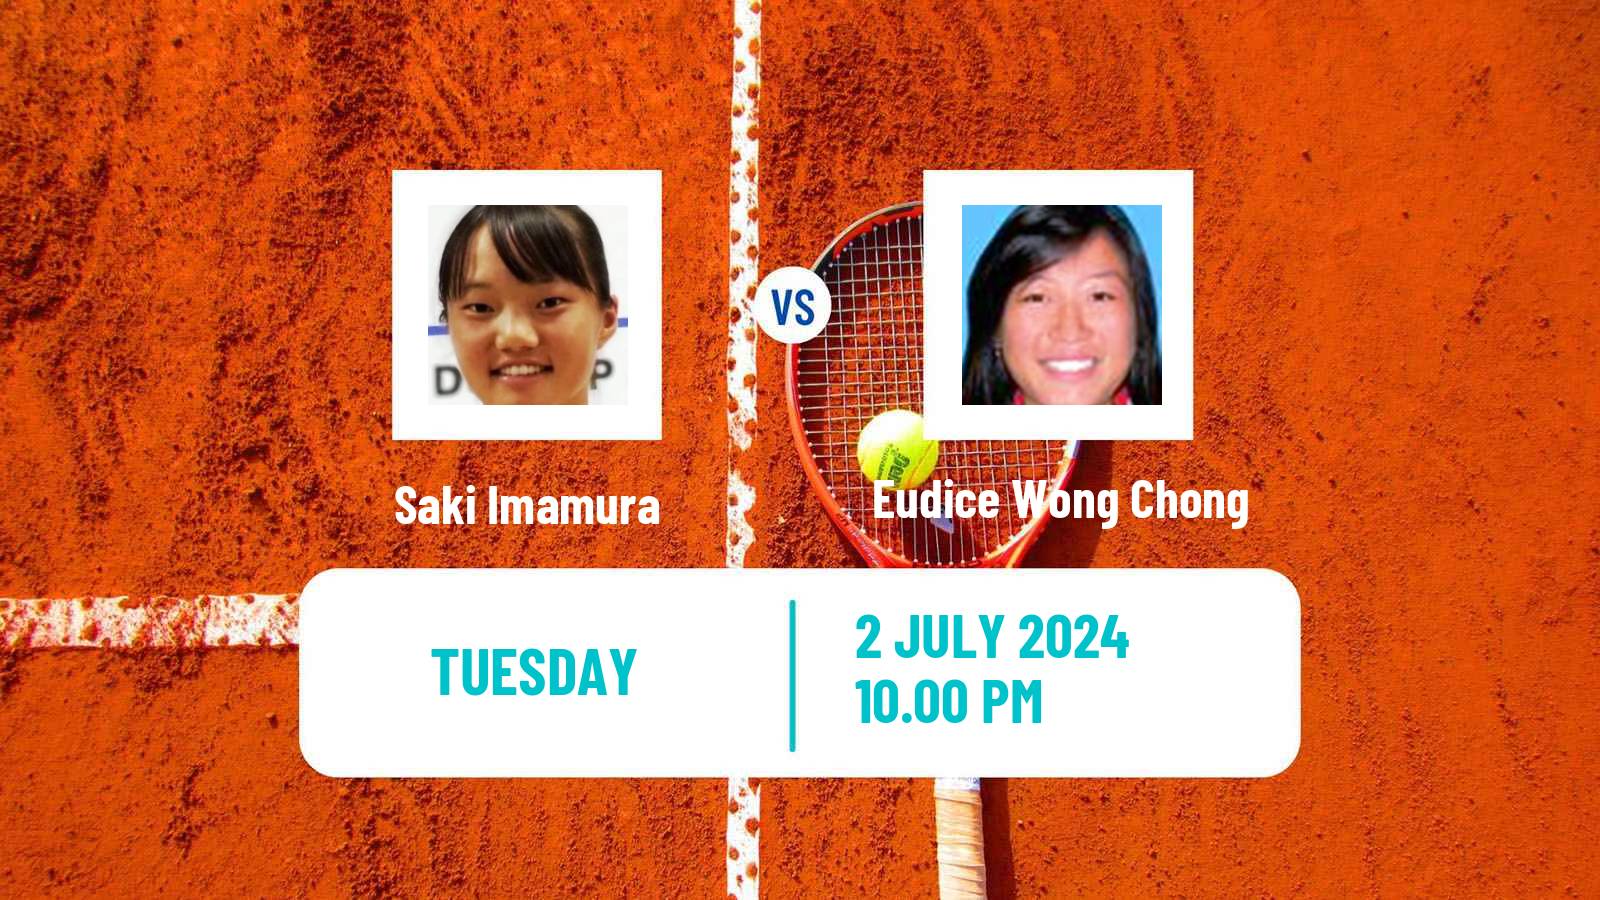 Tennis ITF W35 Hong Kong Women Saki Imamura - Eudice Wong Chong